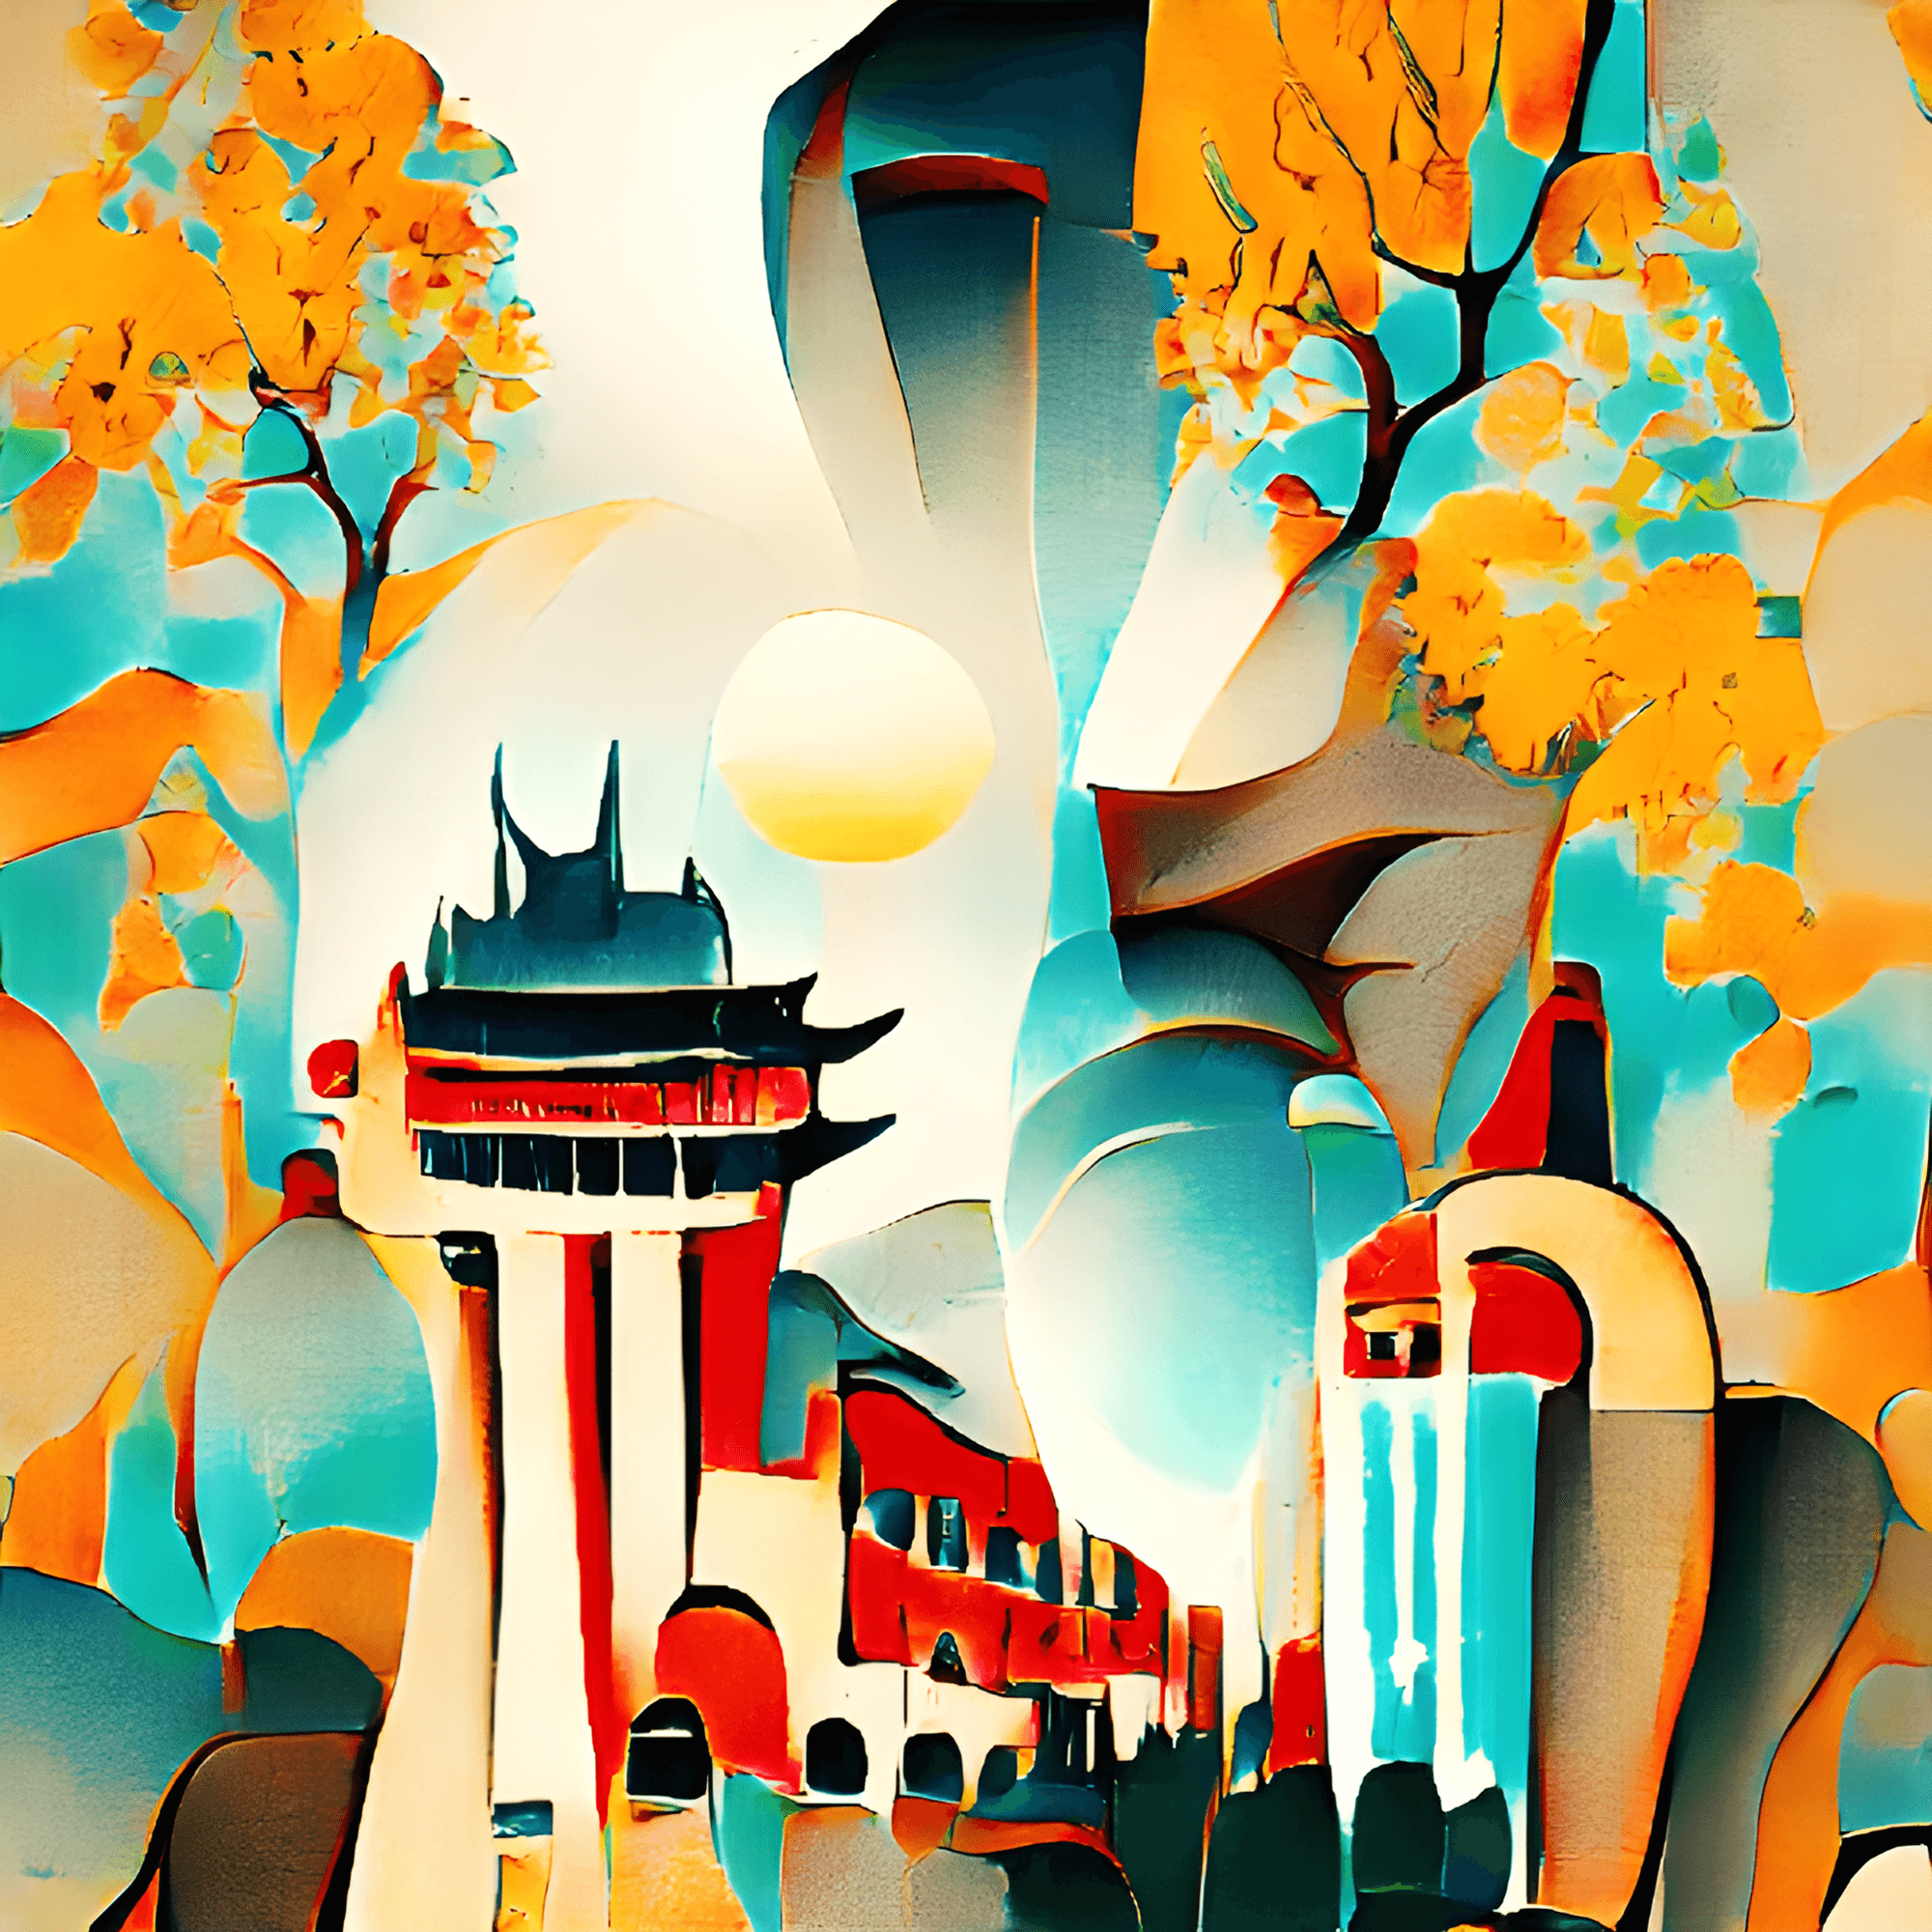 Beijing as Fantasy land